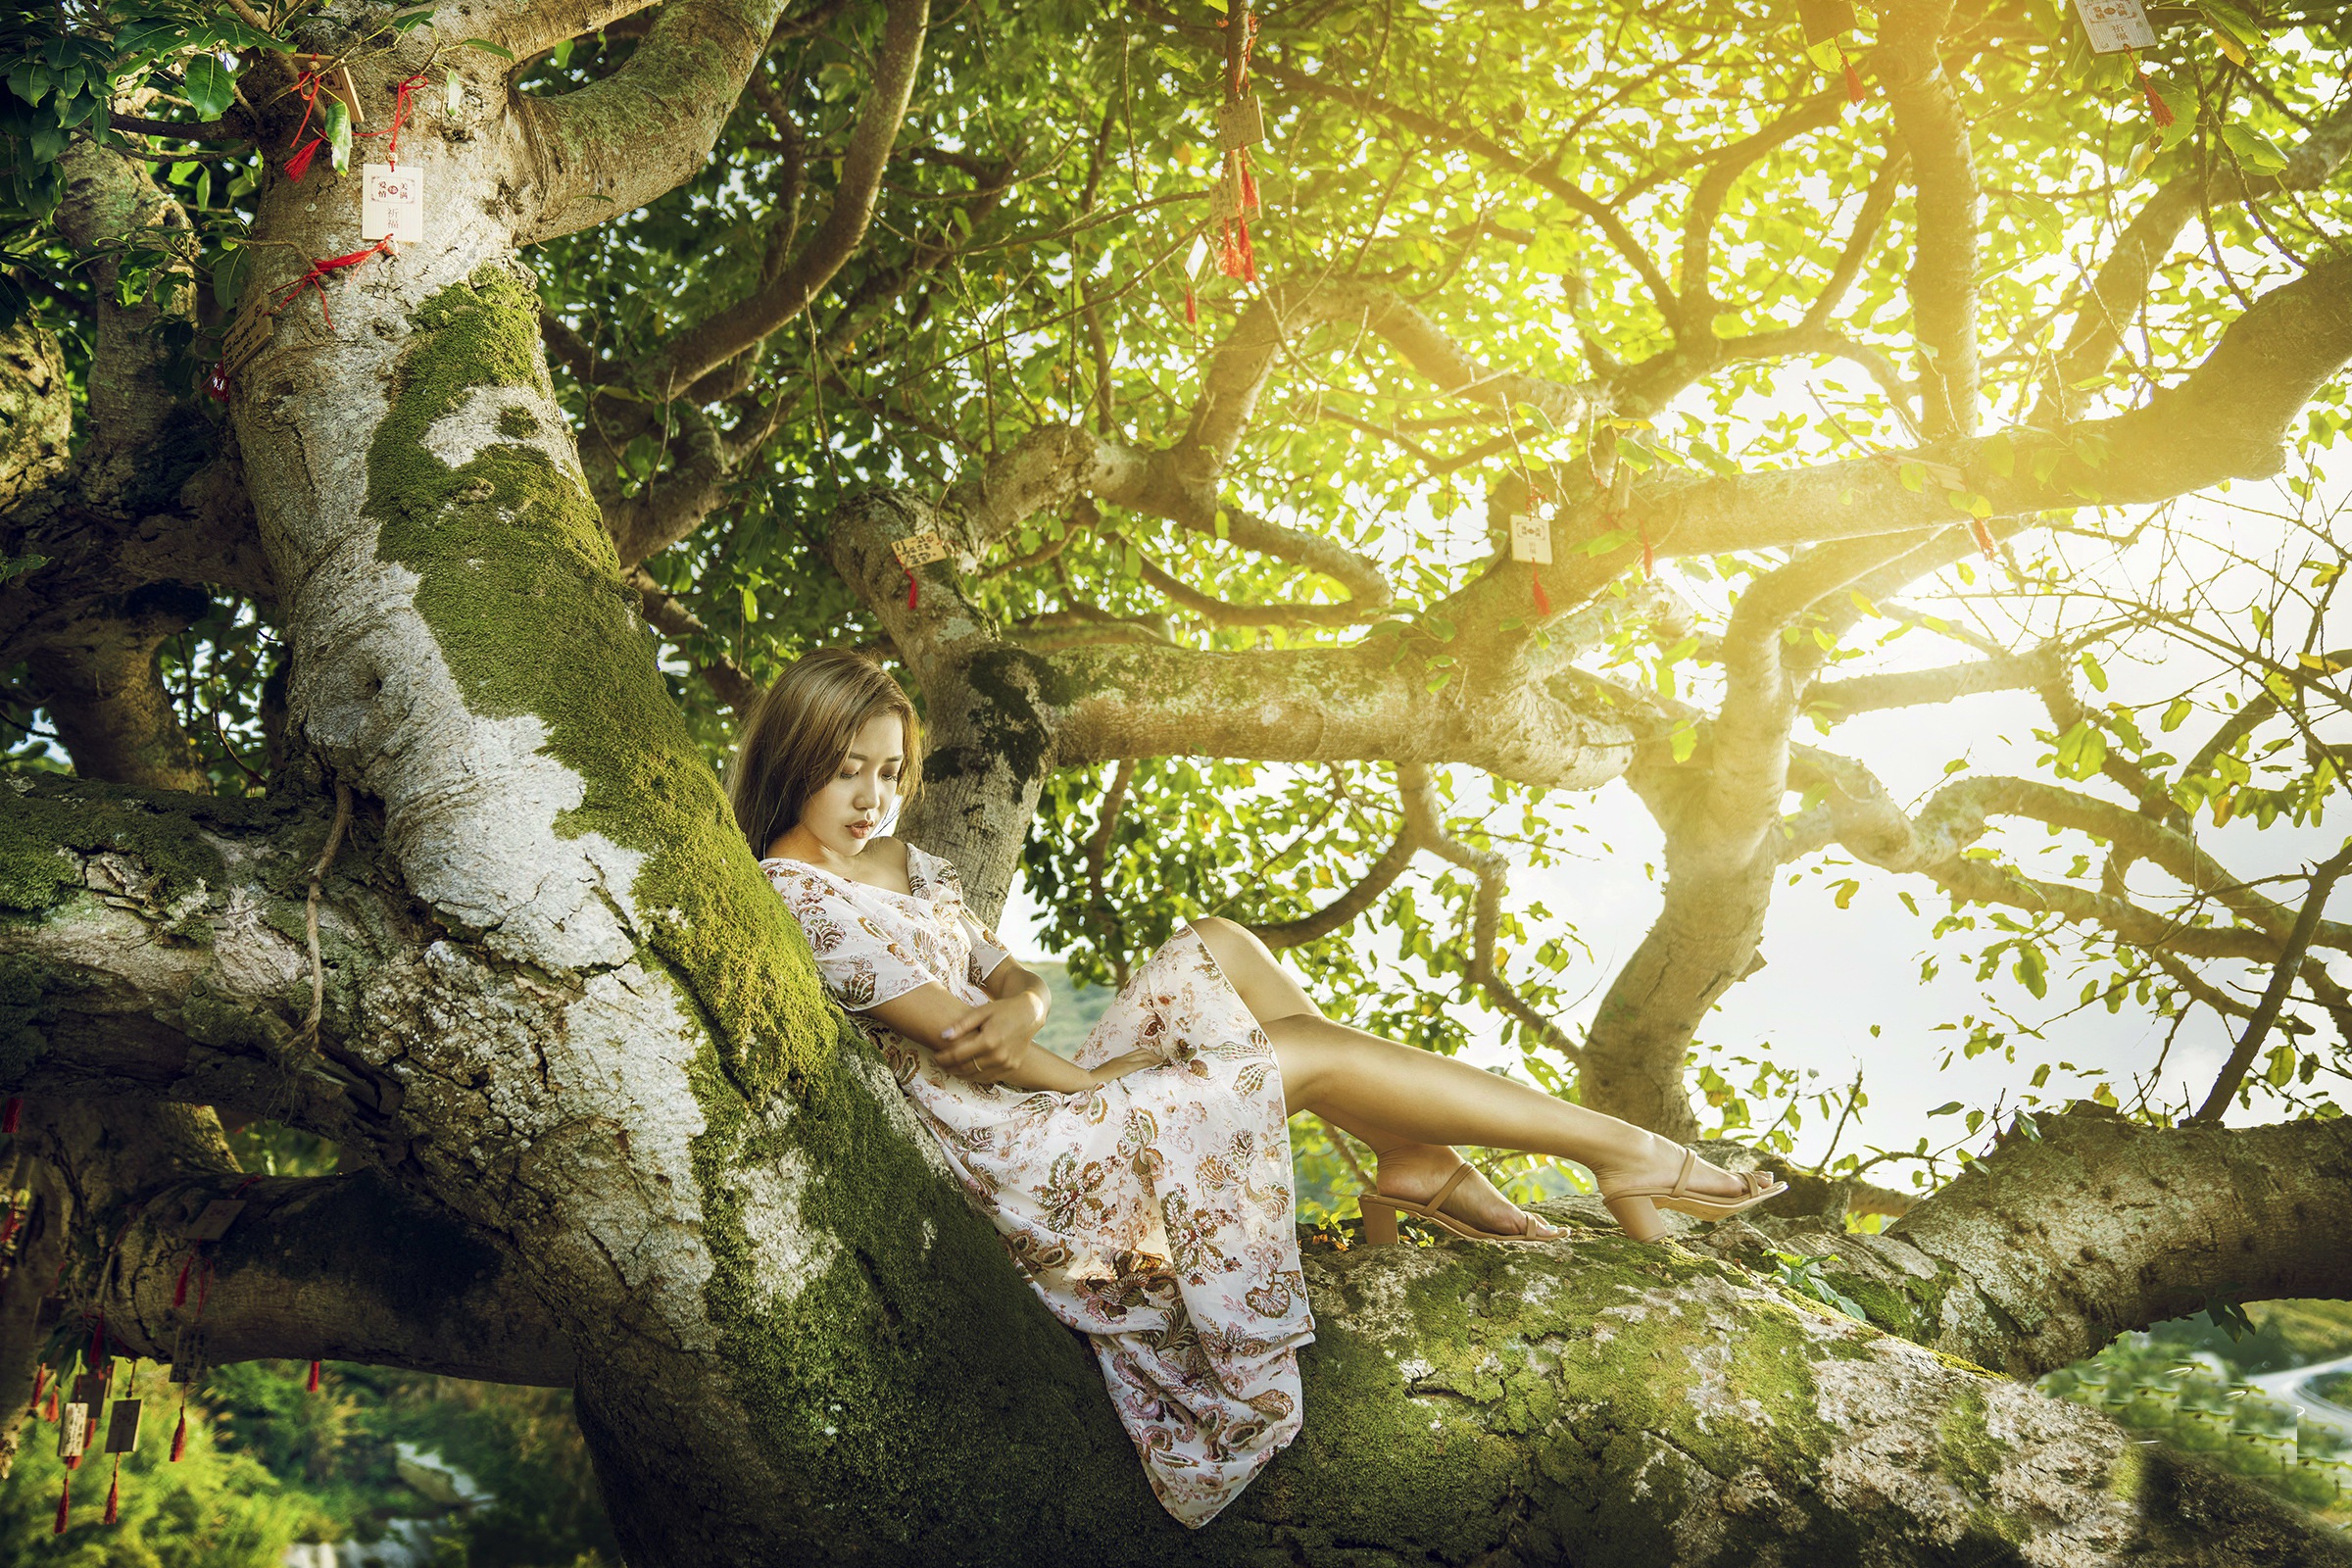 Asian Model Women Long Hair Dark Hair Trees Branch Sitting Barefoot Sandal Flower Dress Leaves Depth 2400x1600